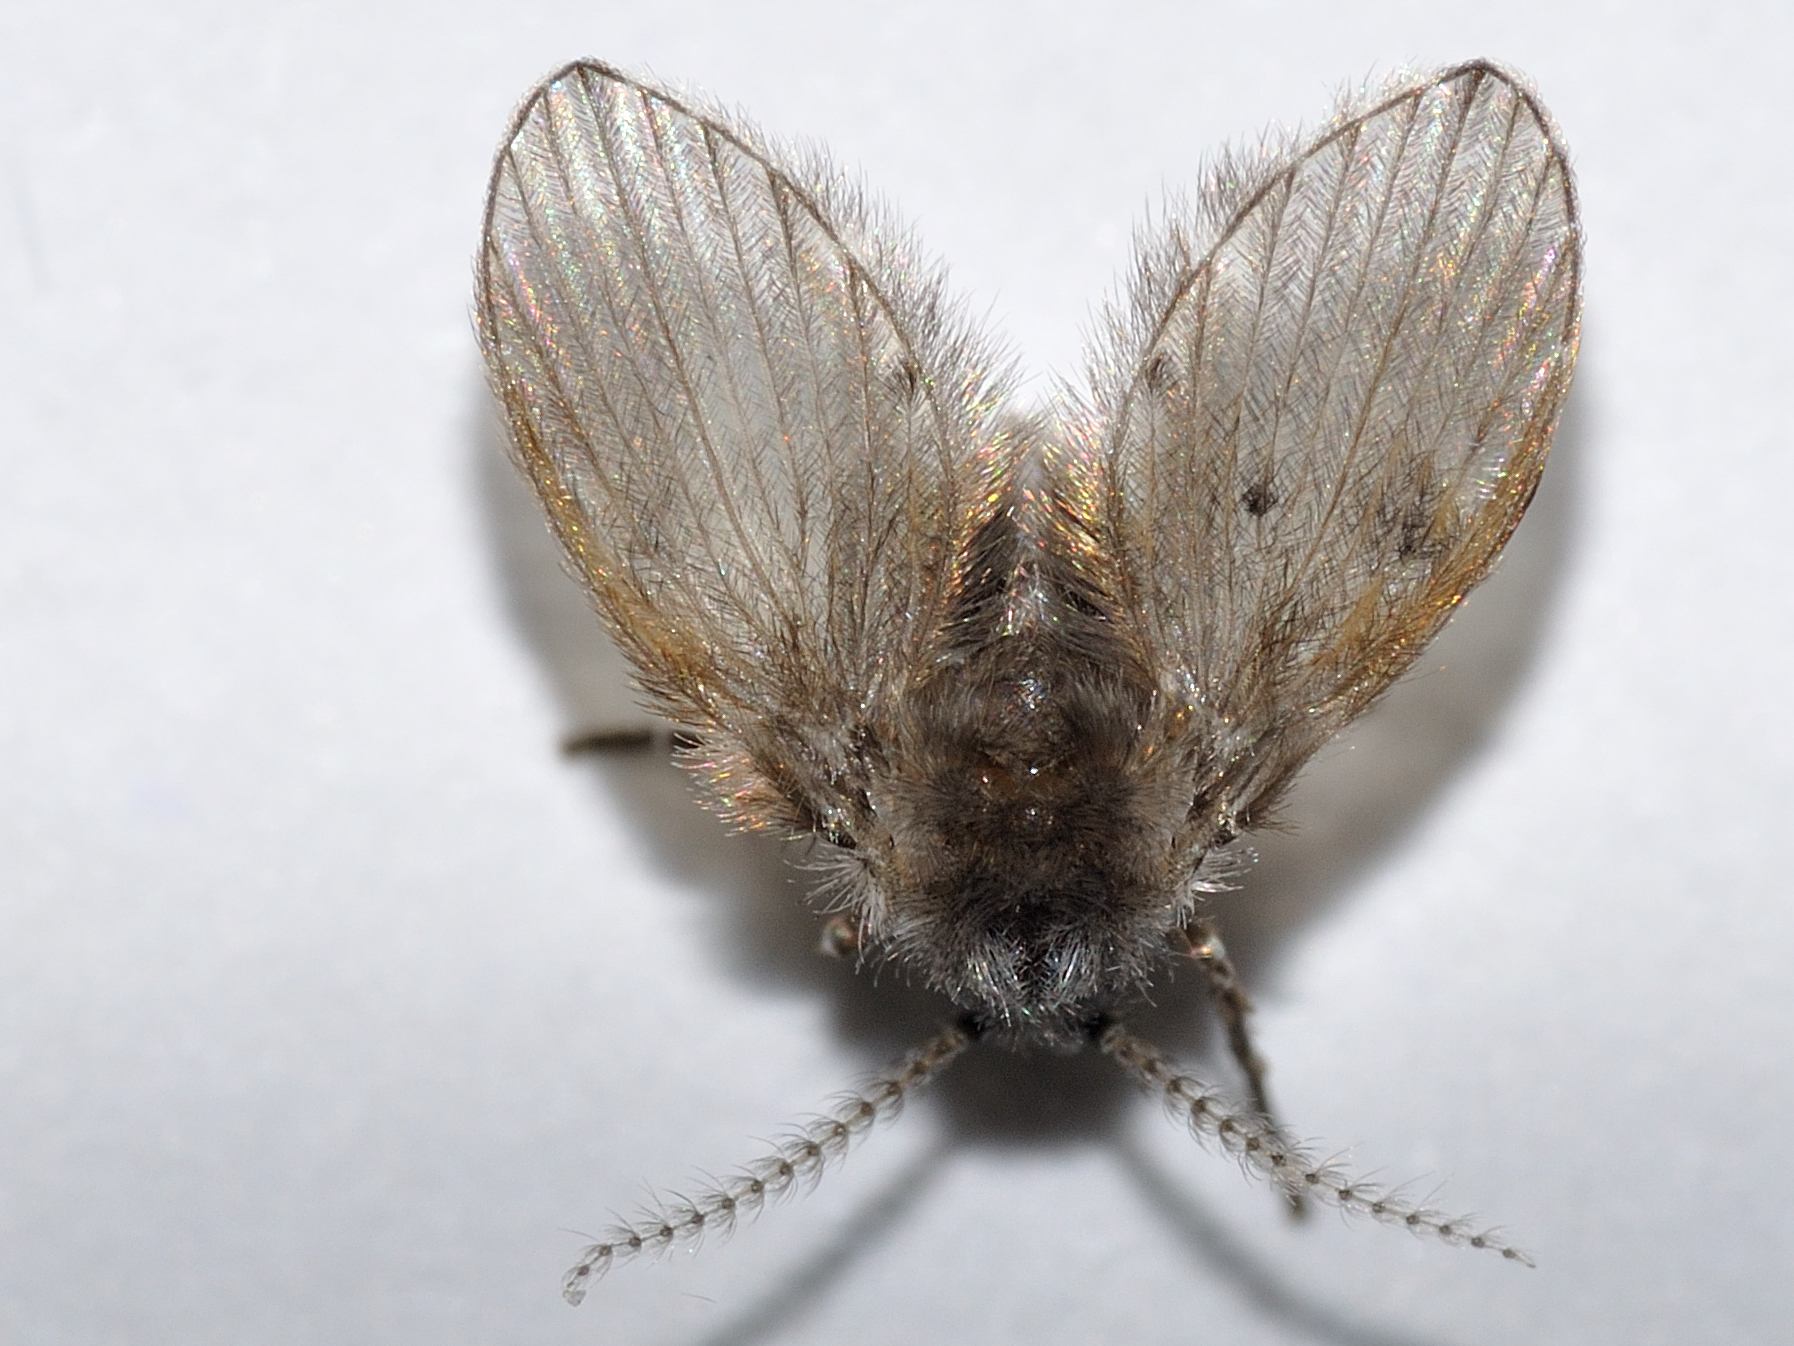 Insetti simili mosche in bagno.. cosa sono? Psychodidae